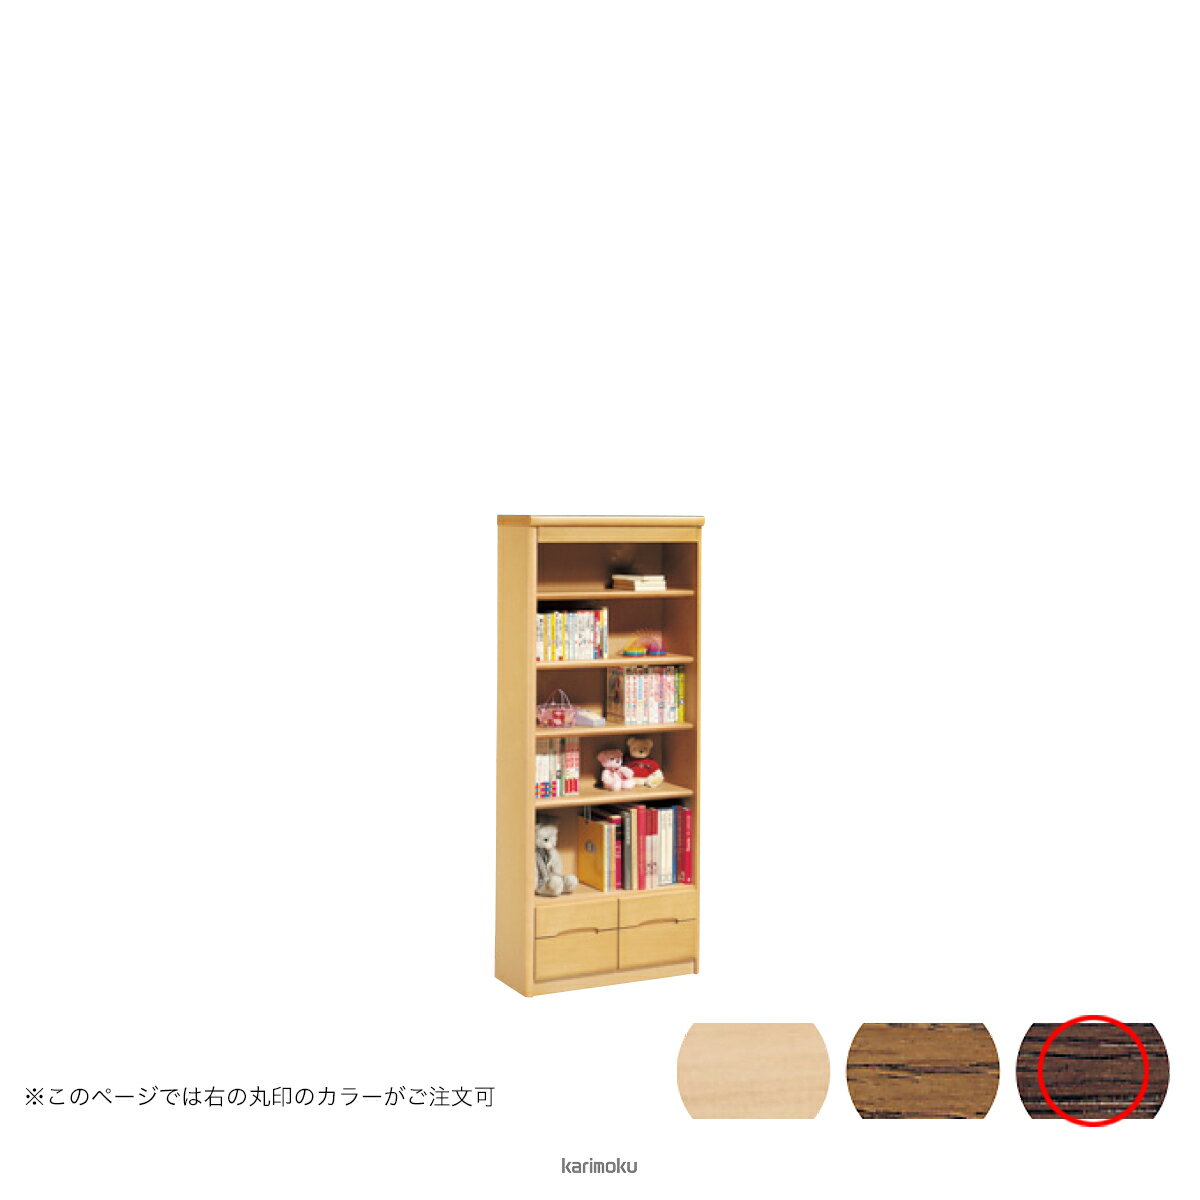 カリモク 書棚 HT2365 [背板付き書棚] (モカブラウン色)【全国送料無料】【同梱不...